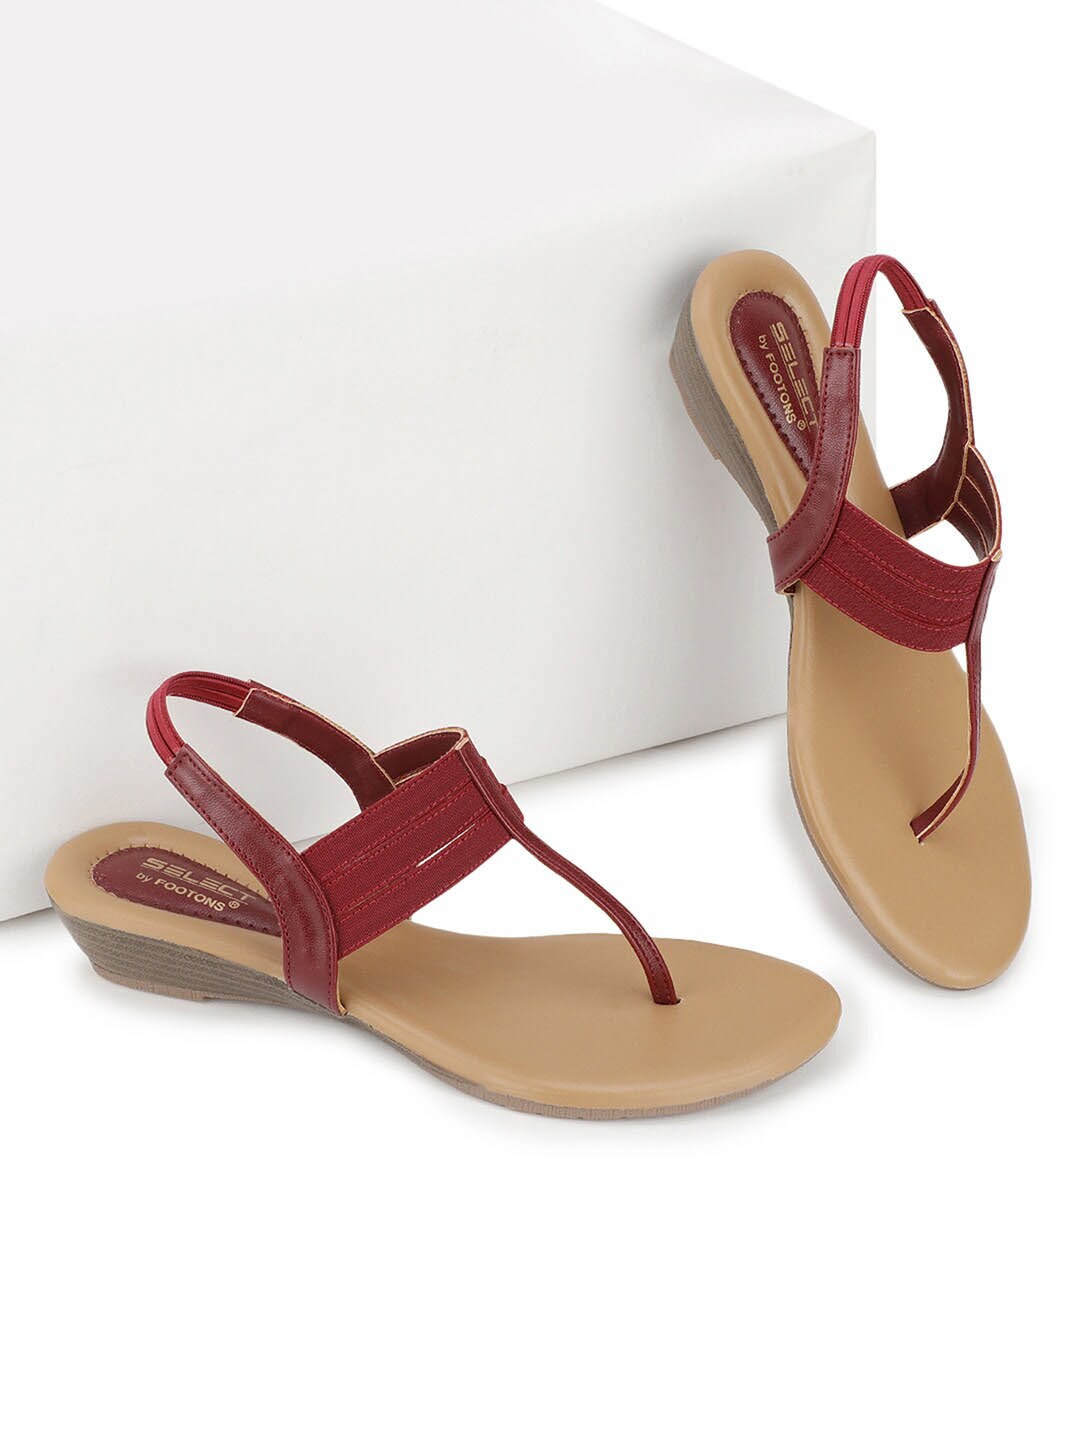 FOOTONS Red & Beige Comfort Heels